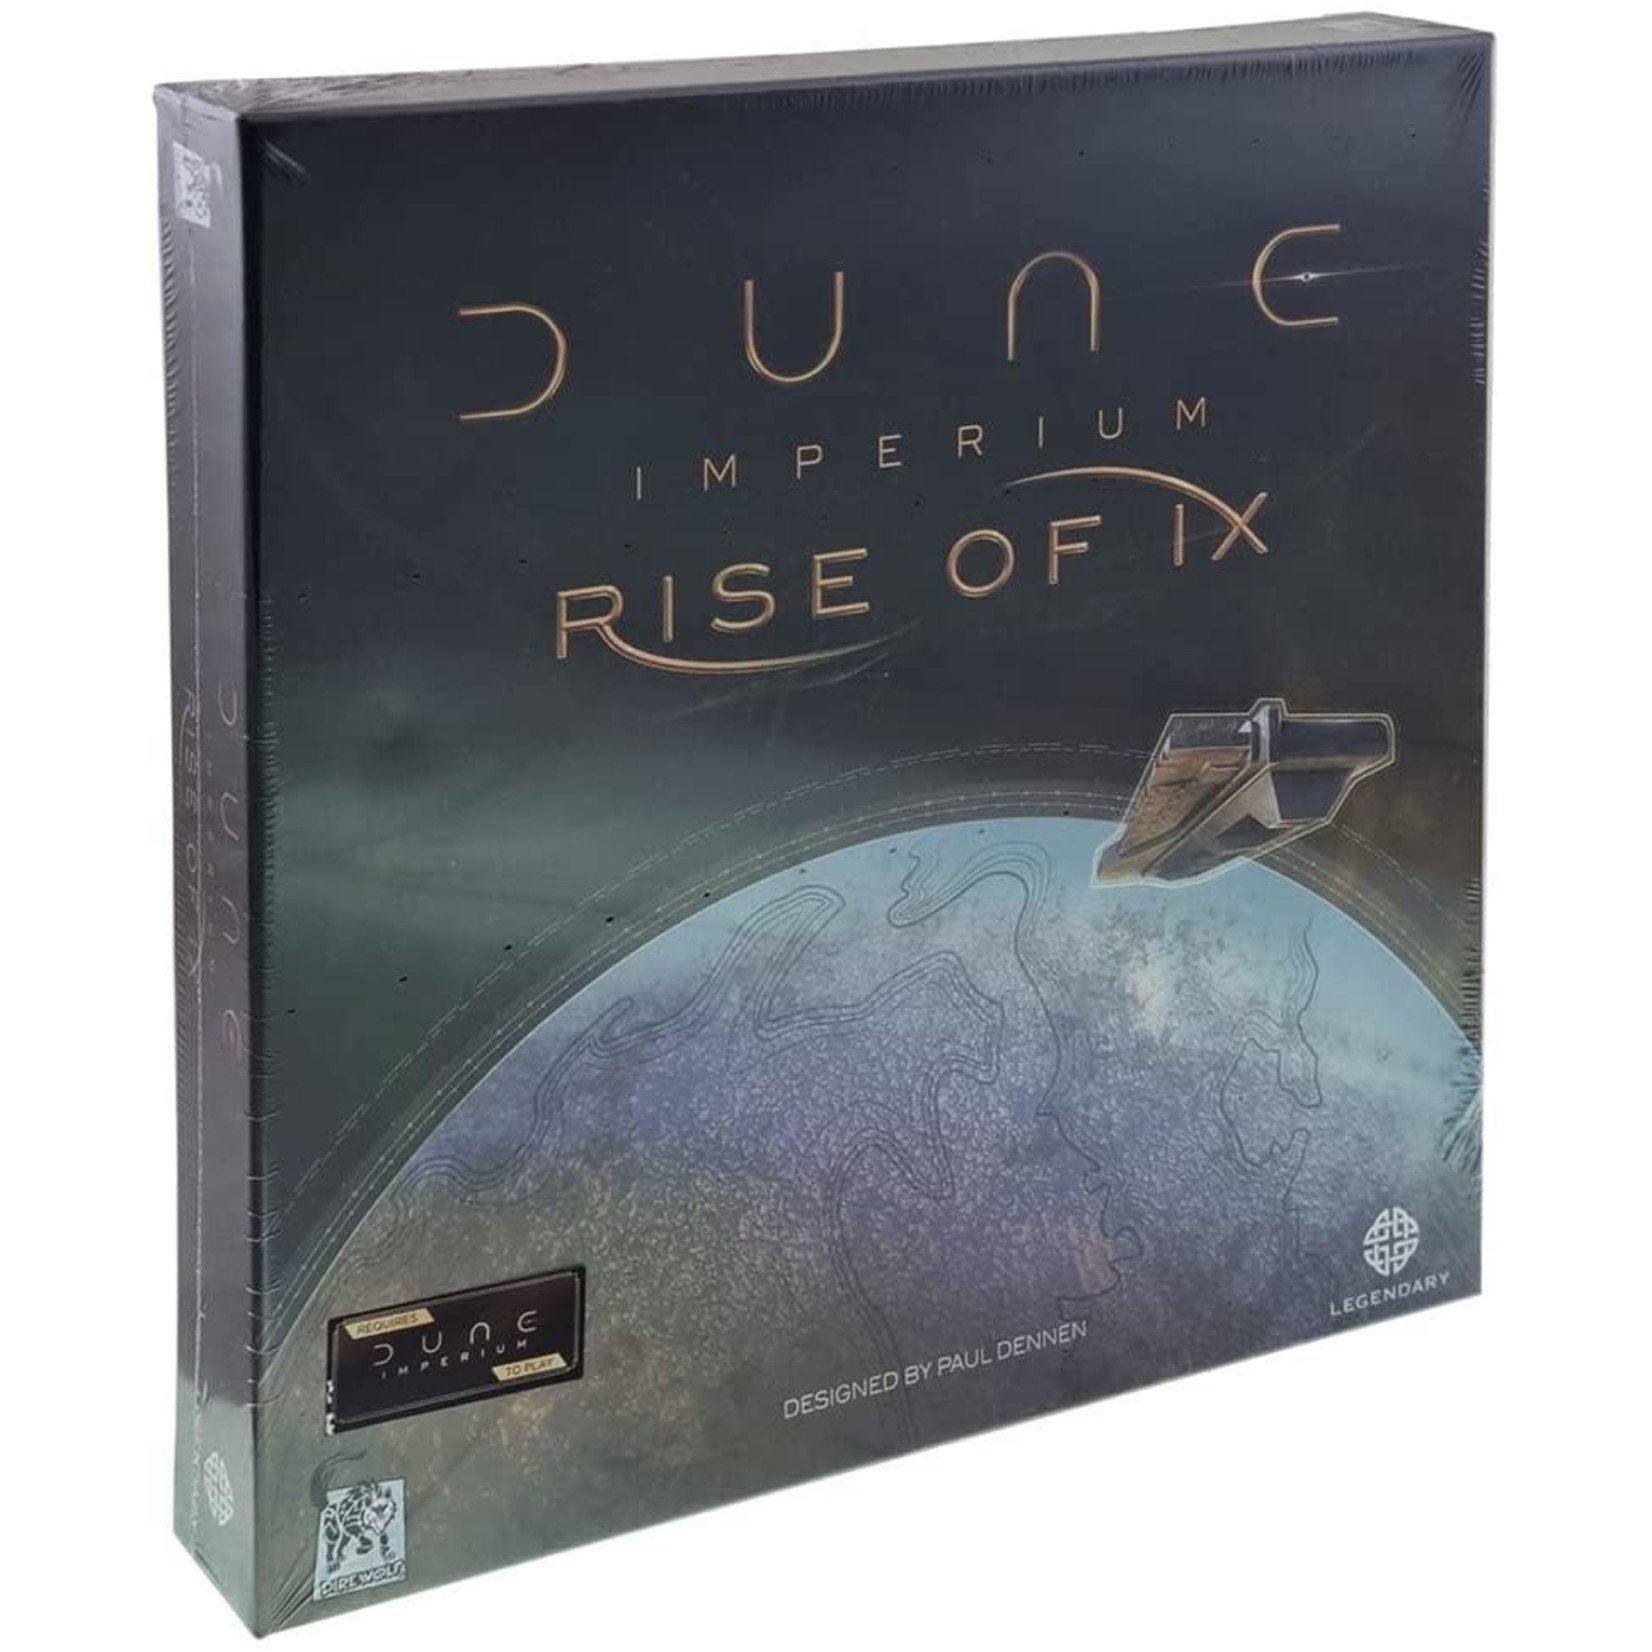 Dire Wolf Digital Dune Imperium: Rise of Ix